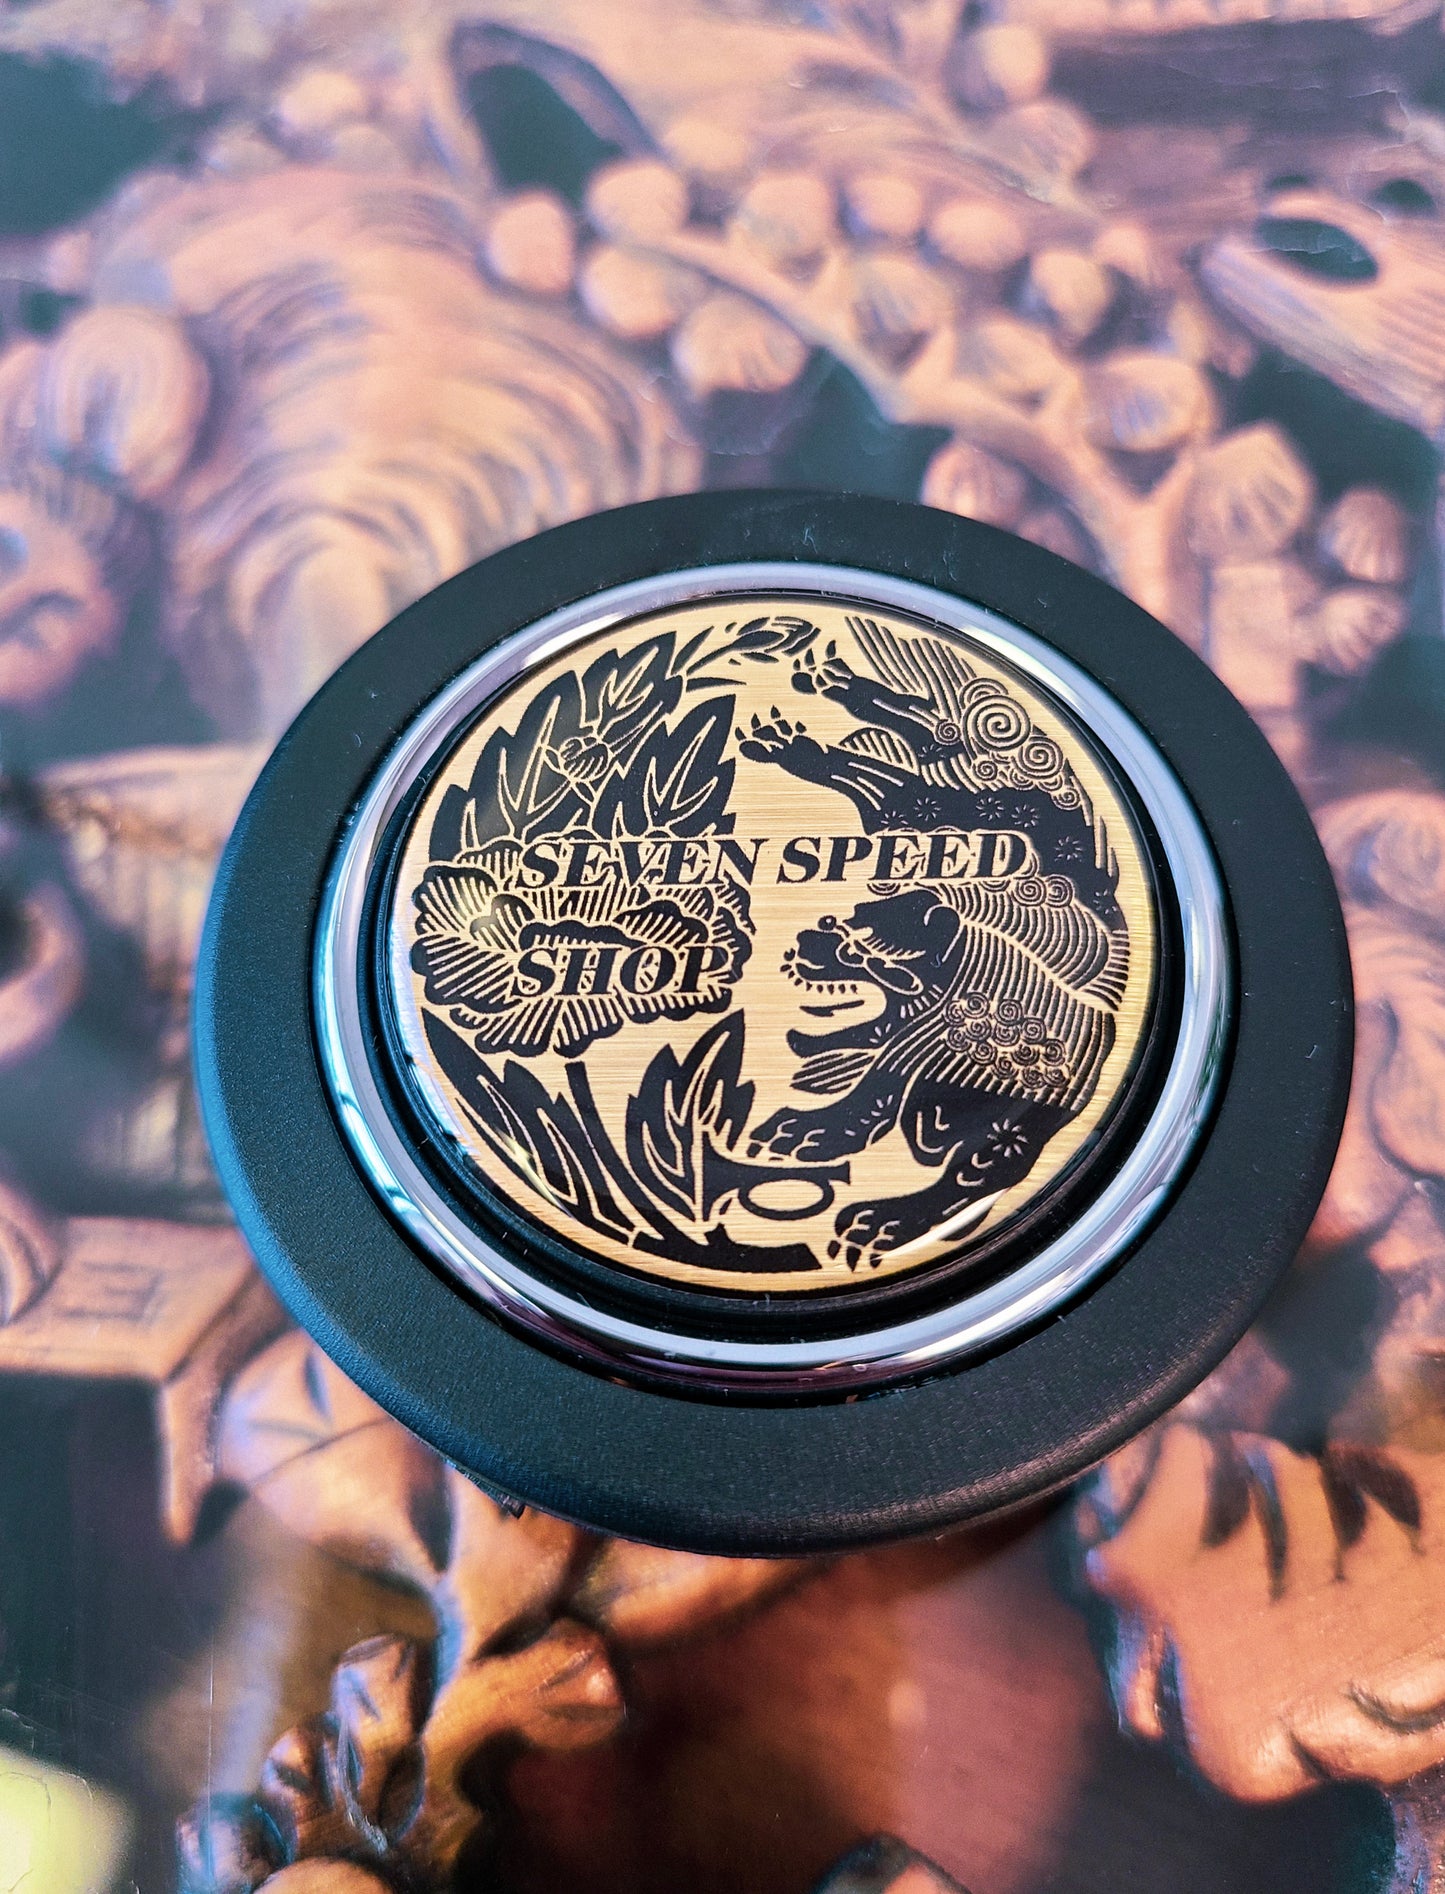 Seven Speed Shop "Lion" horn button